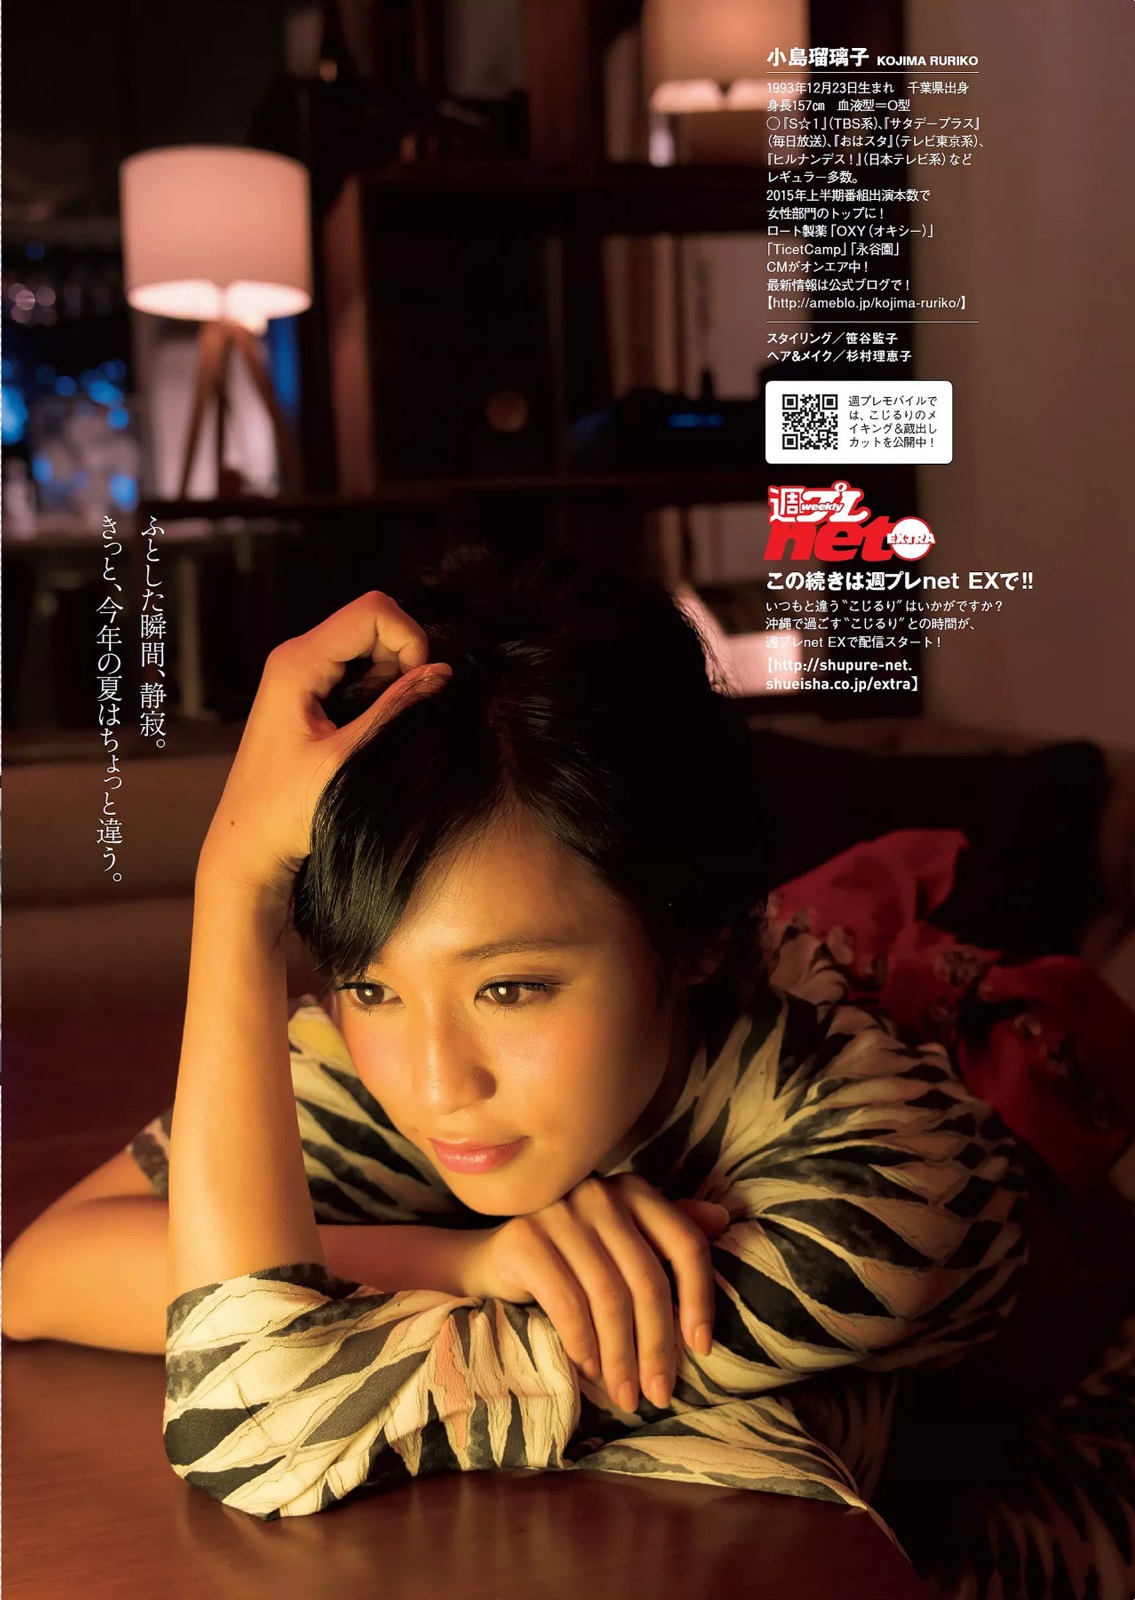 小島瑠璃子 Kojima Ruriko Weekly Playboy 週刊プレイボーイ August 15 Pics 從心 所欲 痞客邦